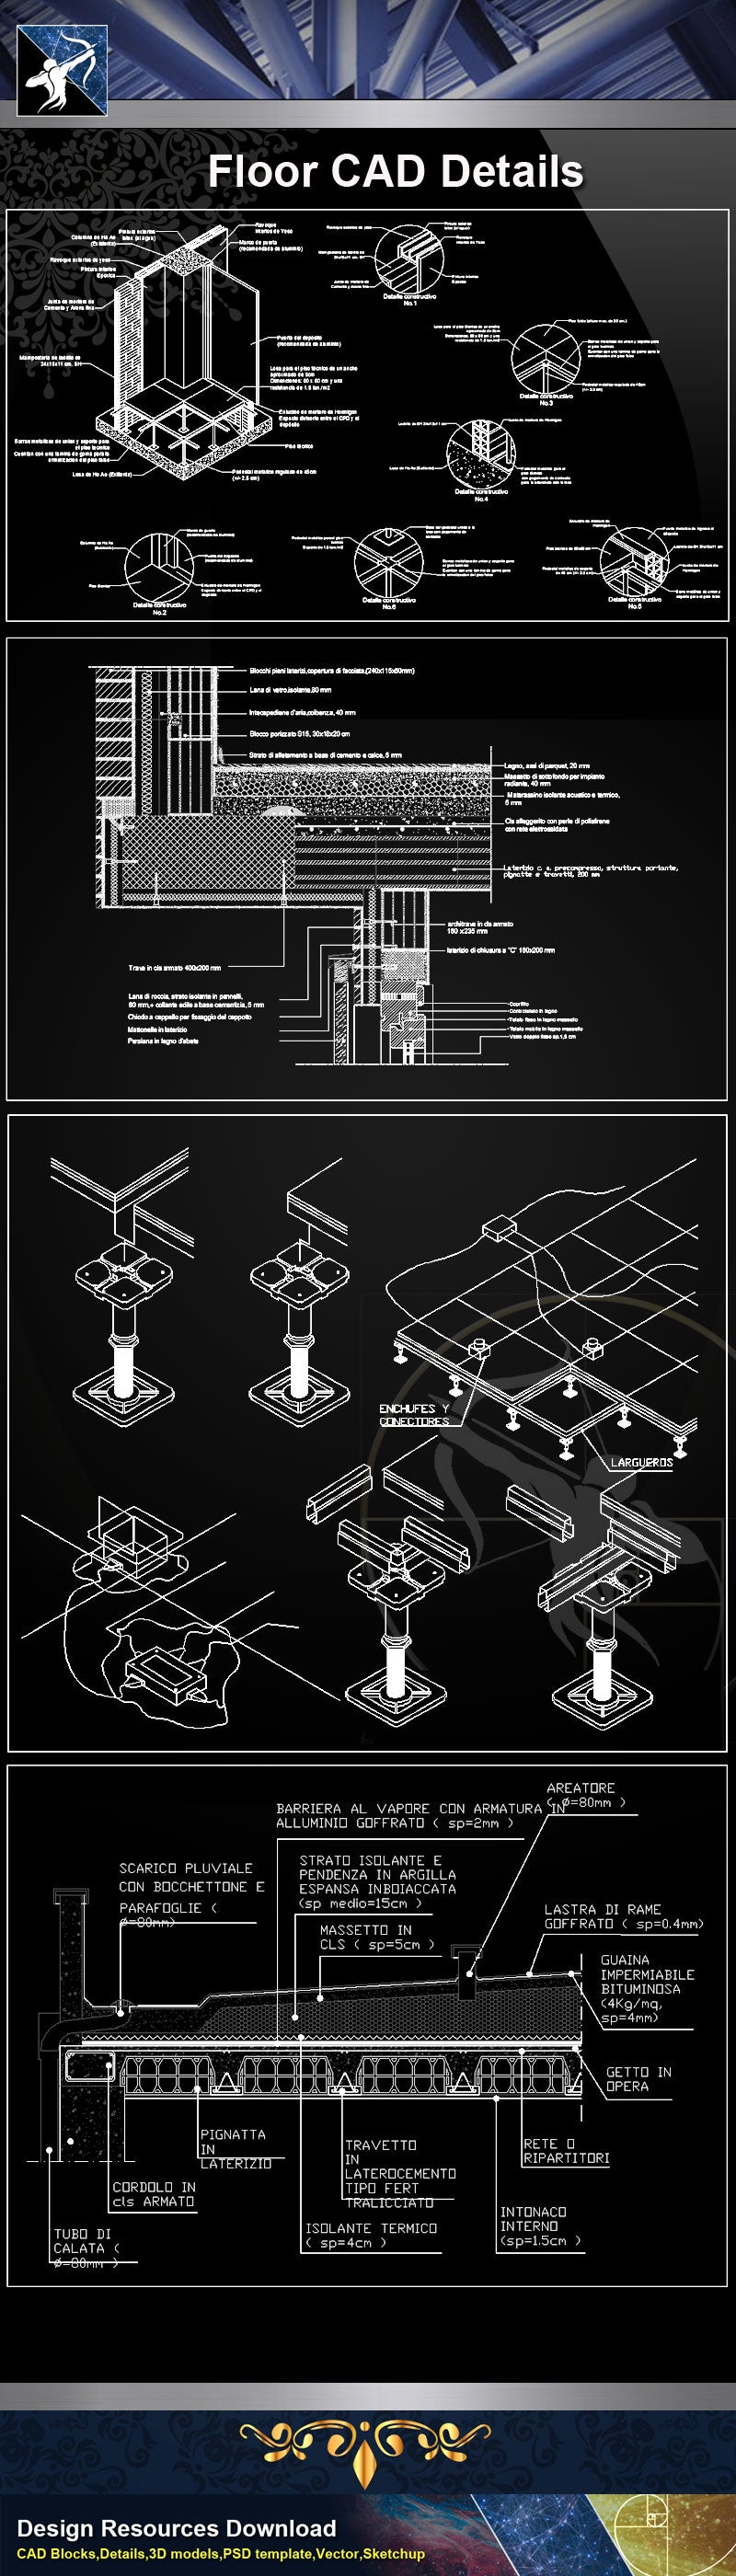 ★【 Floor Details】Floor CAD Details Collection